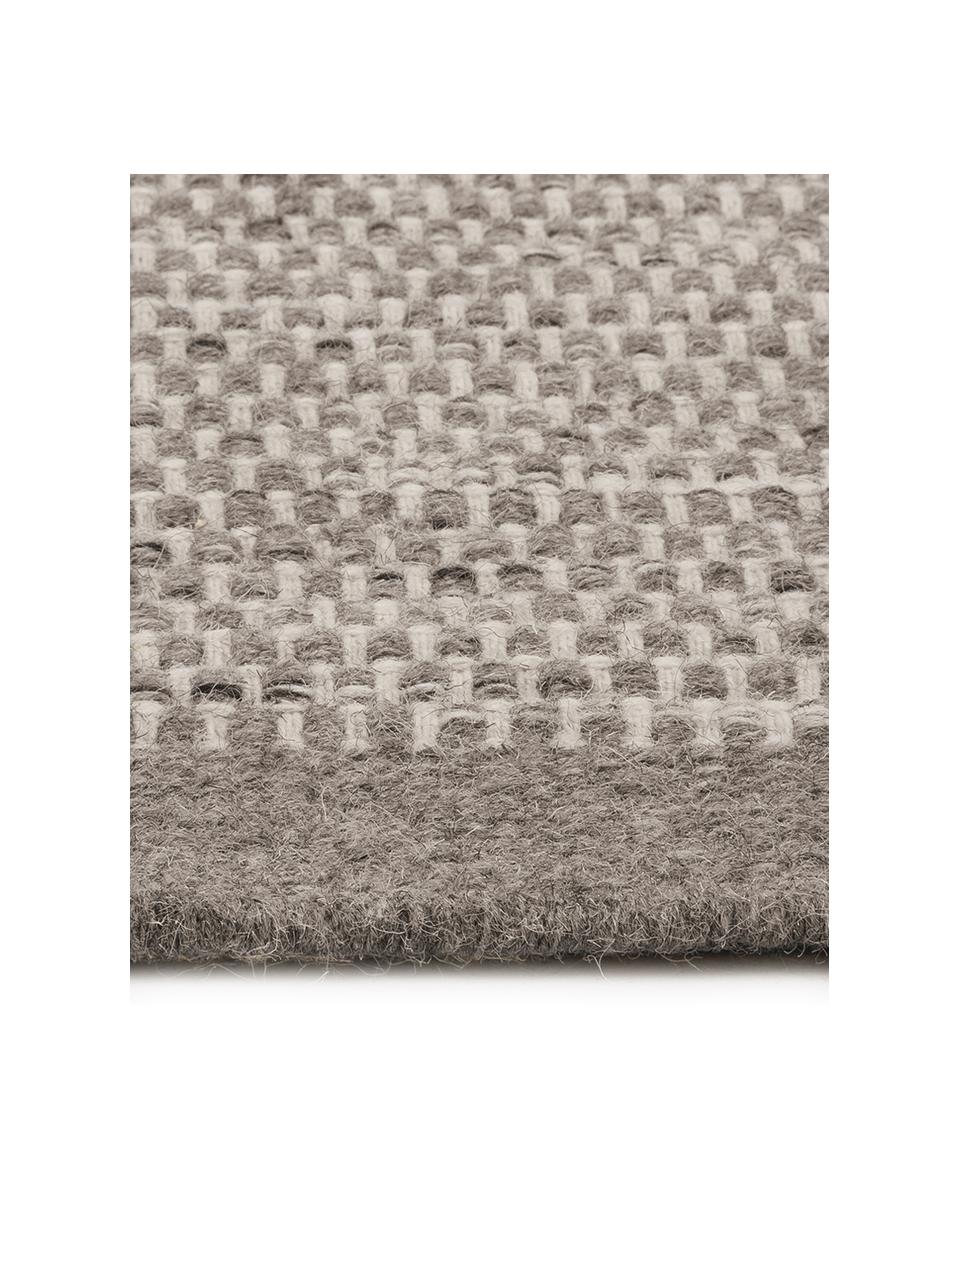 Handgewebter Wollteppich Asko in Grautönen, Flor: 90% Wolle, 10% Baumwolle, Hellgrau, Grau, B 170 x L 240 cm (Grösse M)